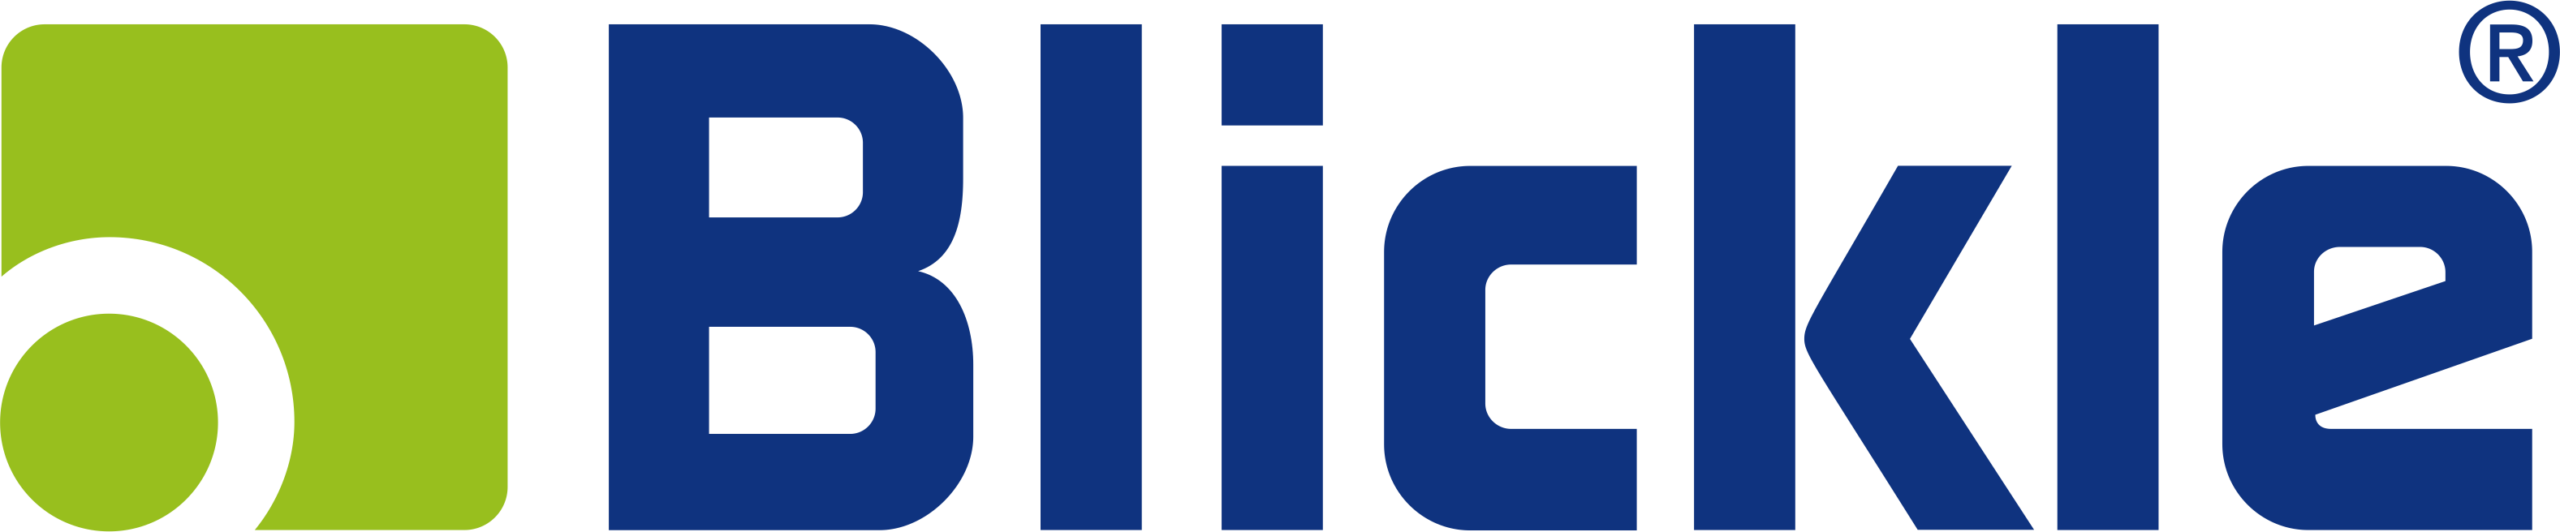 Blickle_logo-3.png